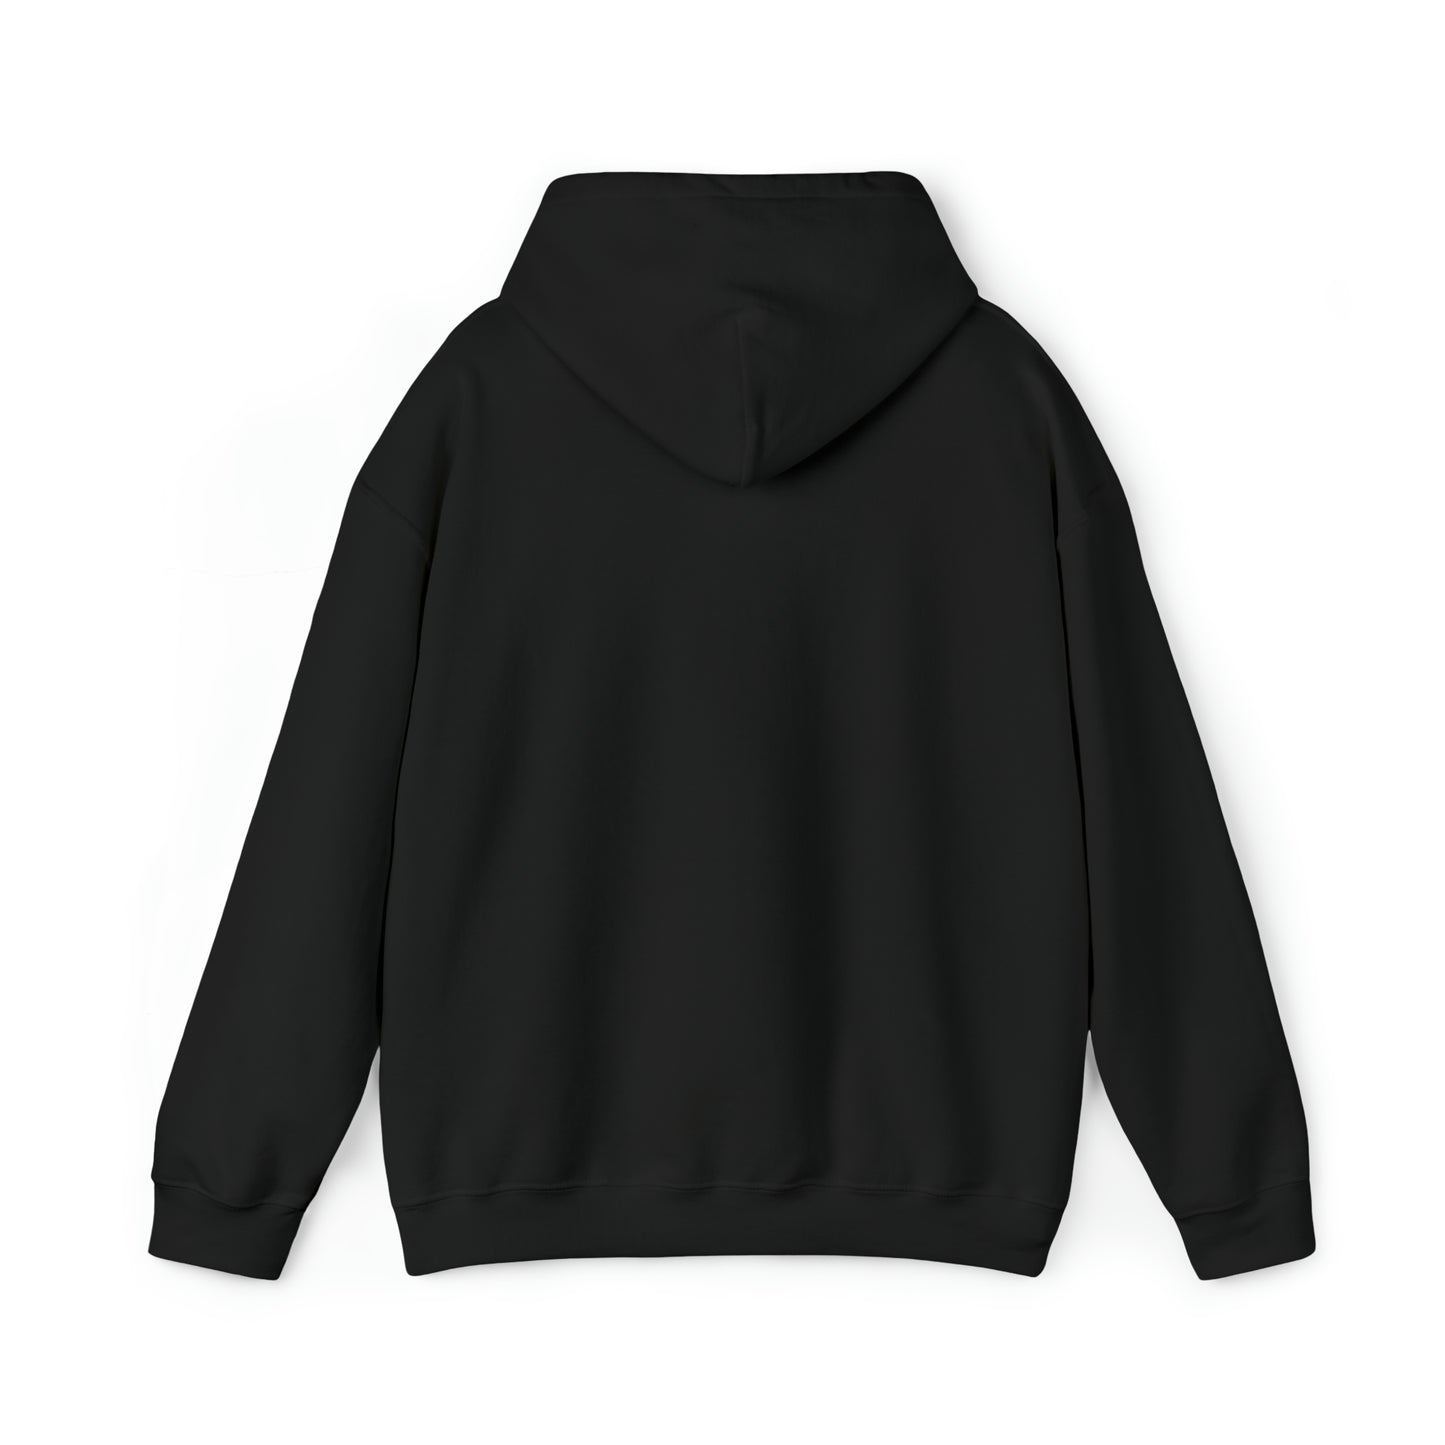 Roam Free || Unisex Heavy Blend™ Hooded Sweatshirt